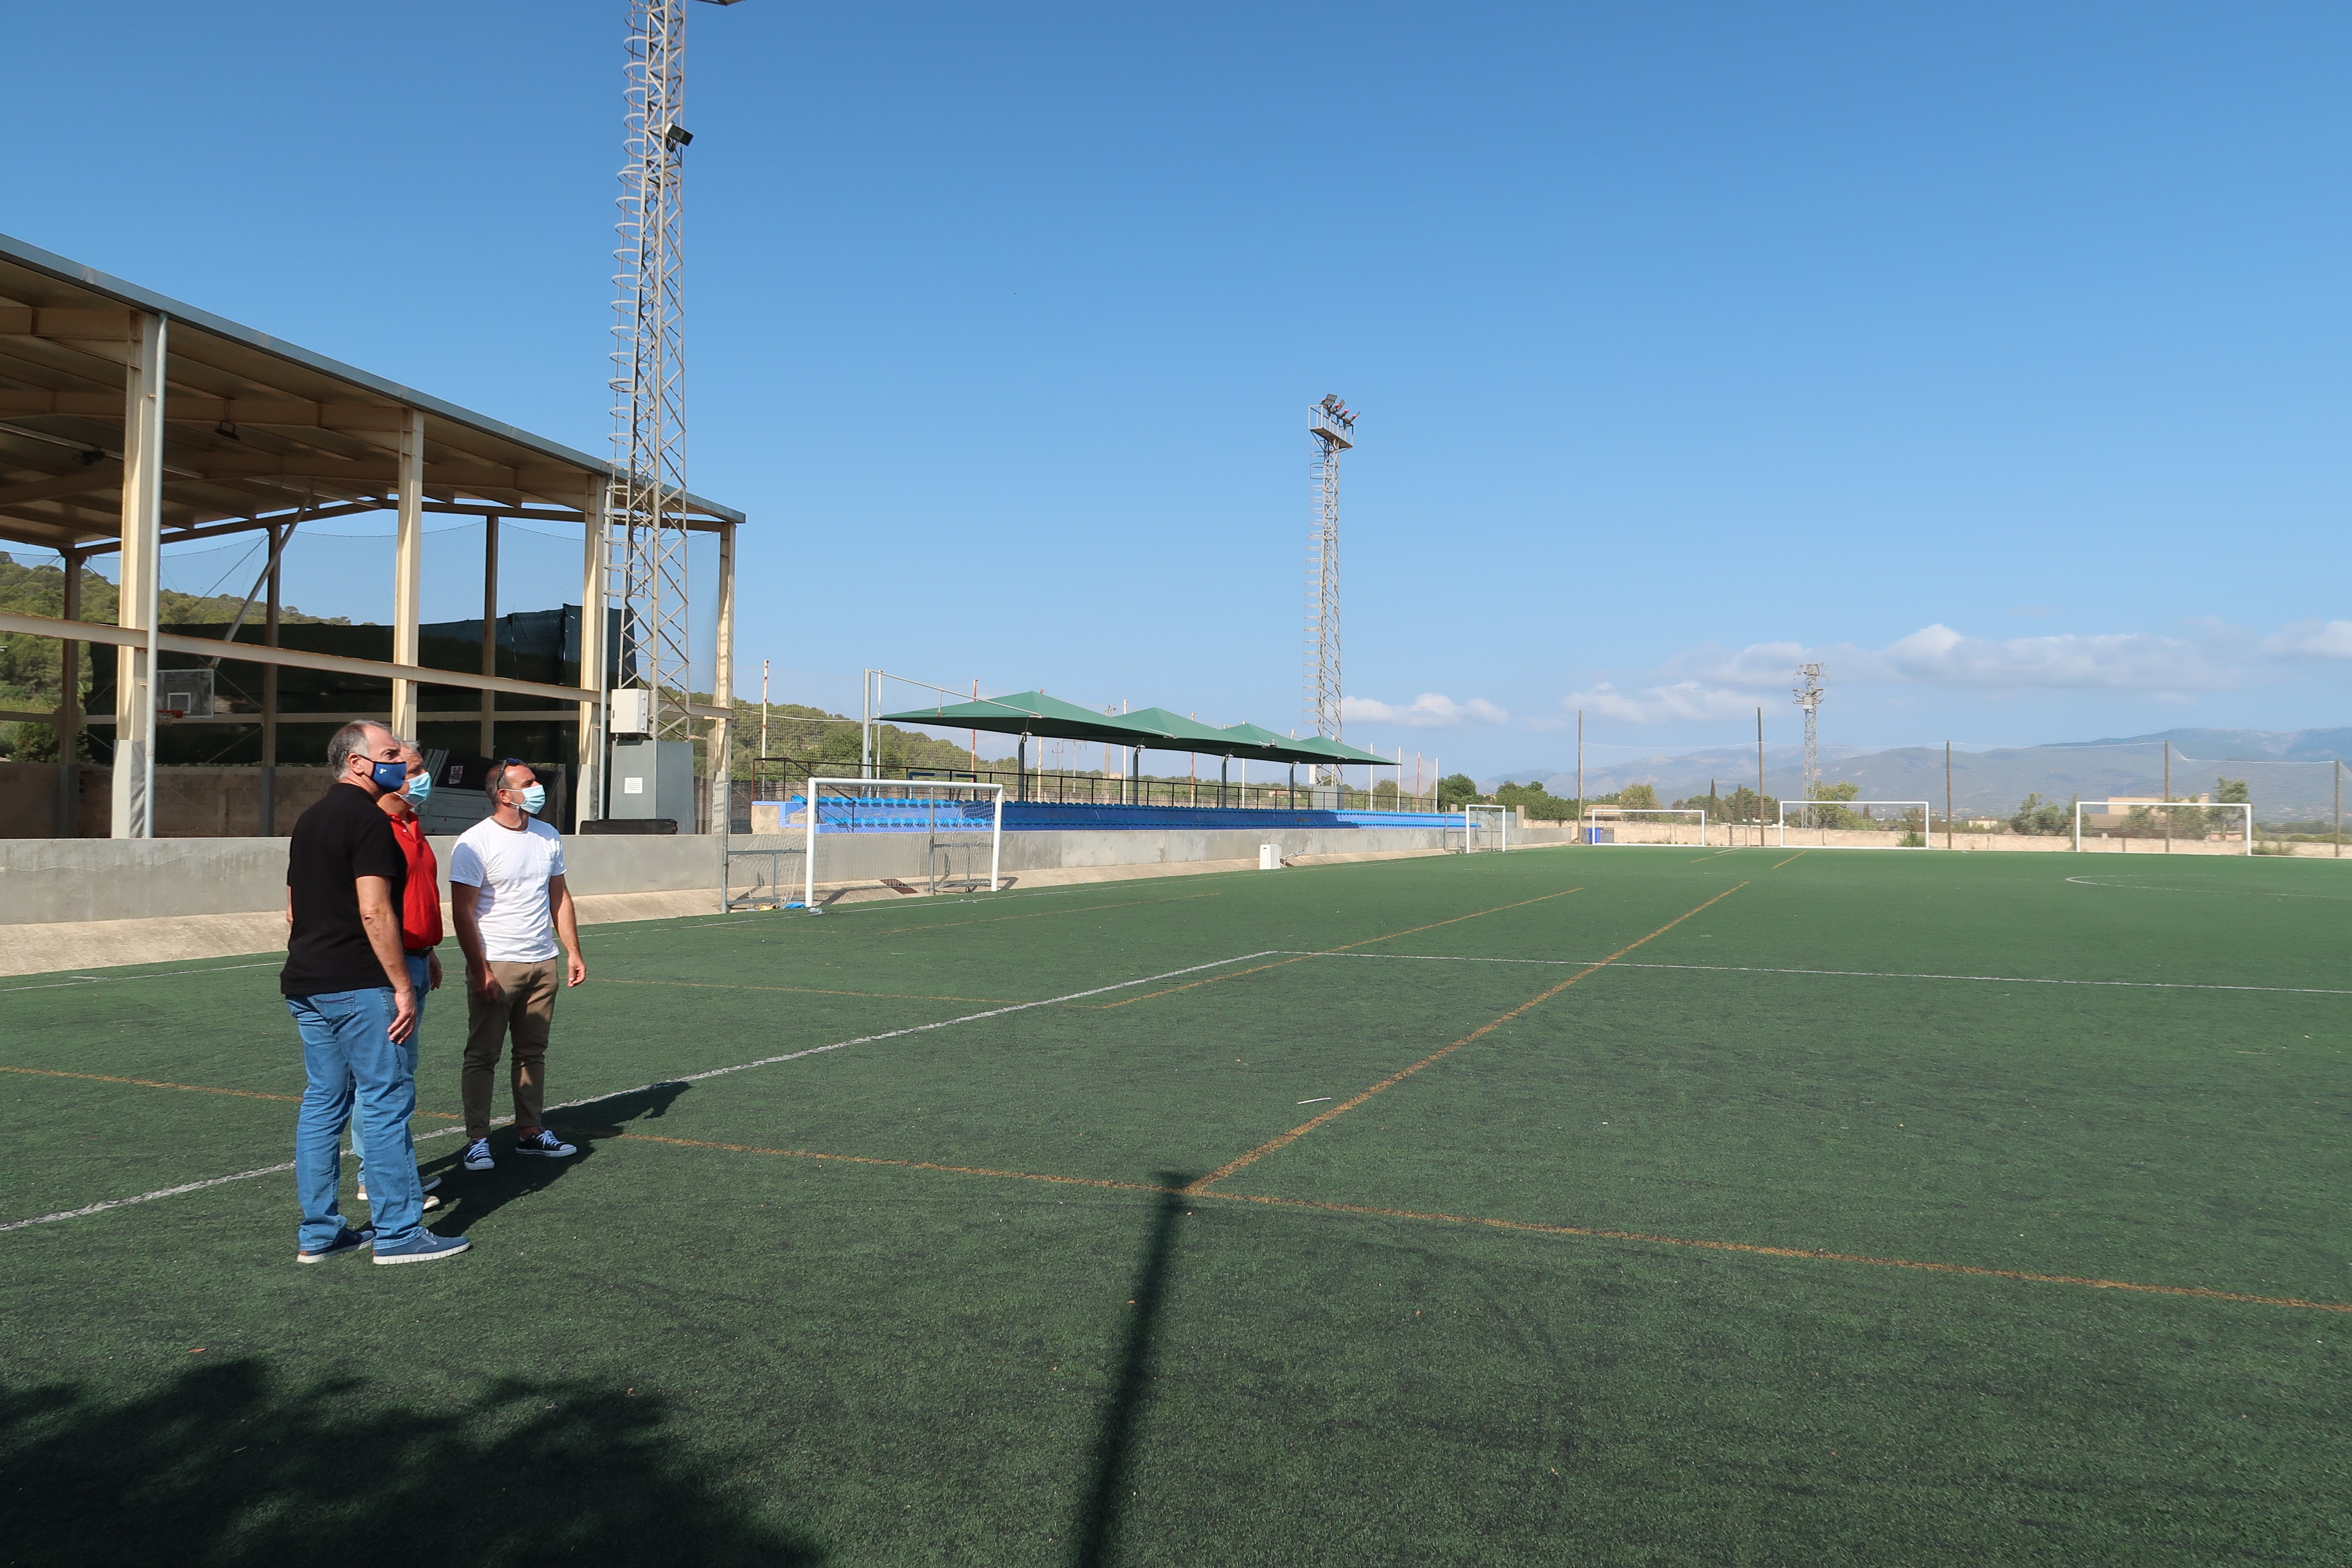 El Ajuntament de Santa Eugènia ha sustituido la iluminación de las cuatro torres de este campo de futbol por uno de más sostenible gracias a la aportación del Consell de Mallorca.